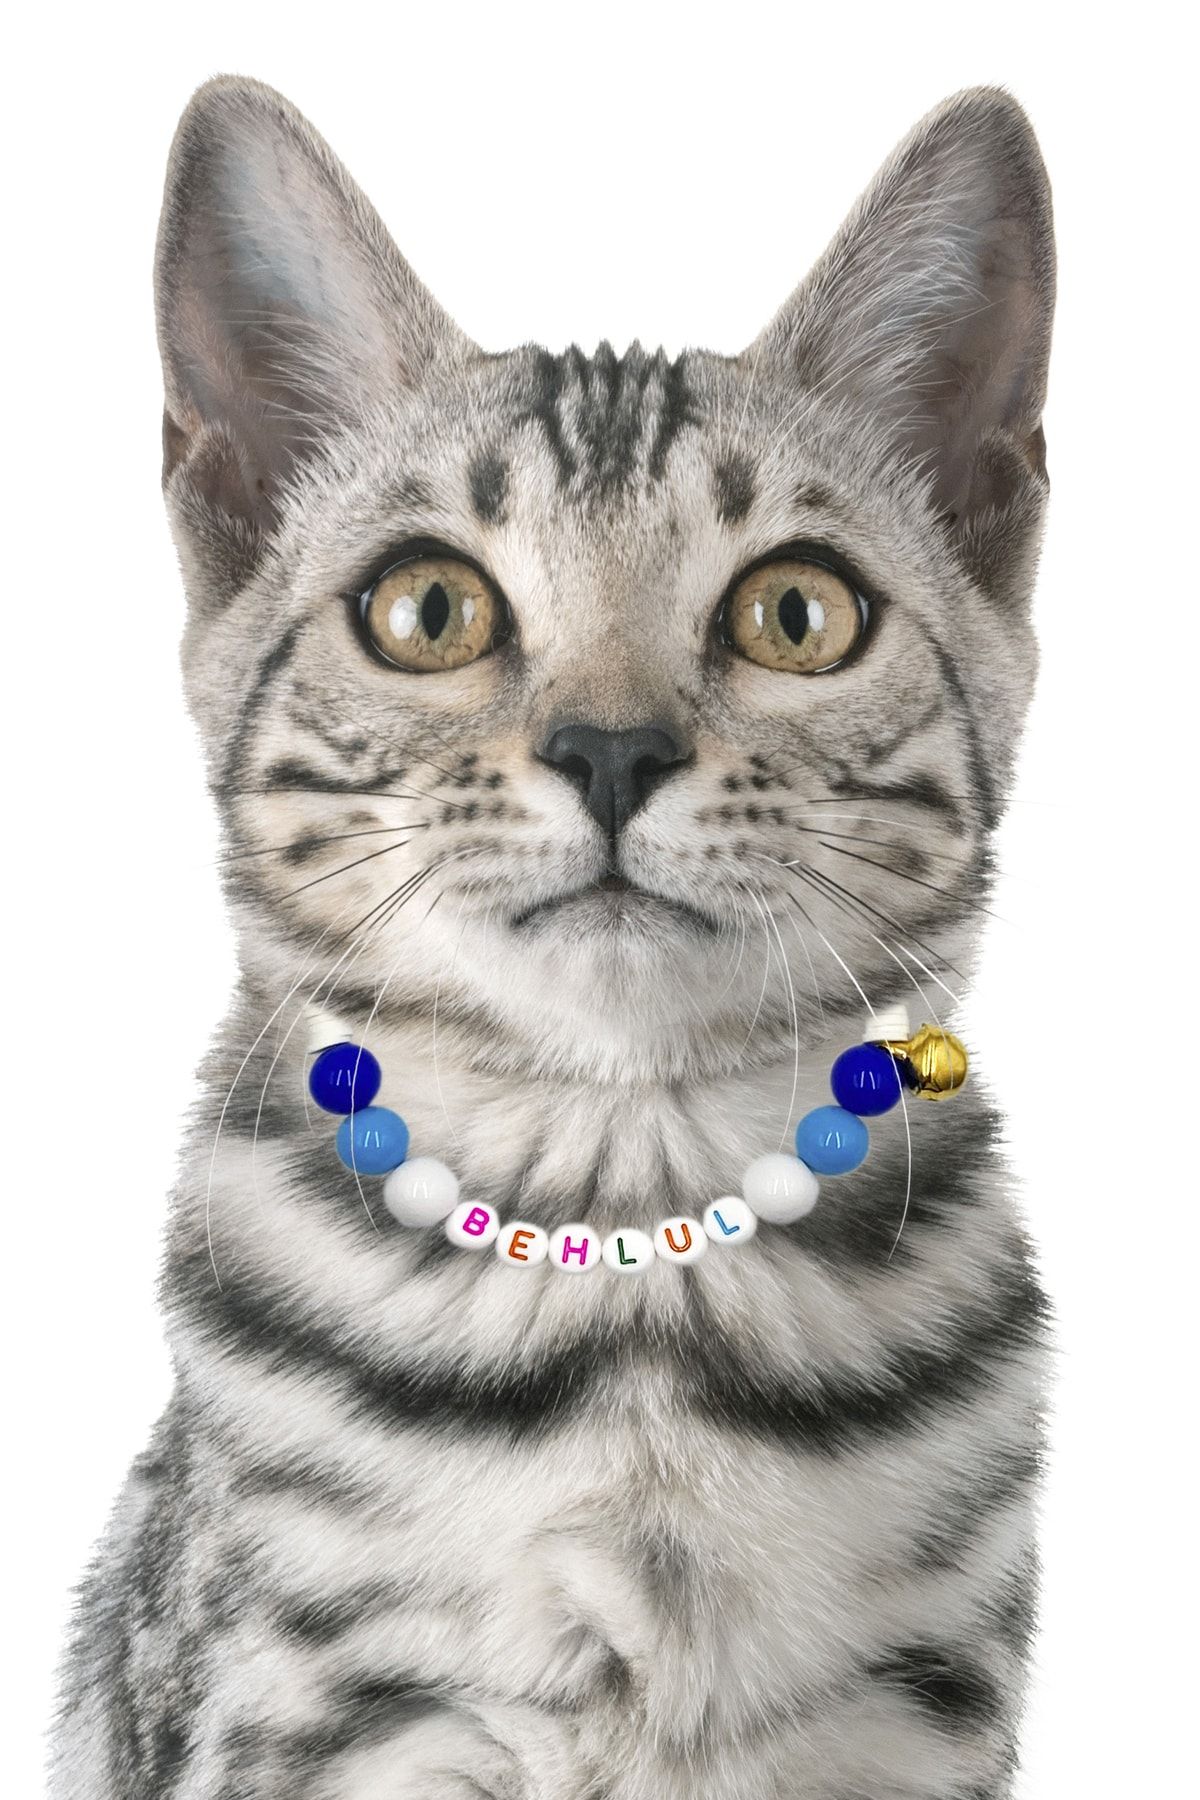 Petella Kedi Boyun Tasması Kedi Kolyesi Isimli Kedi Tasması Ayarlanabilir Boncuk Detaylı